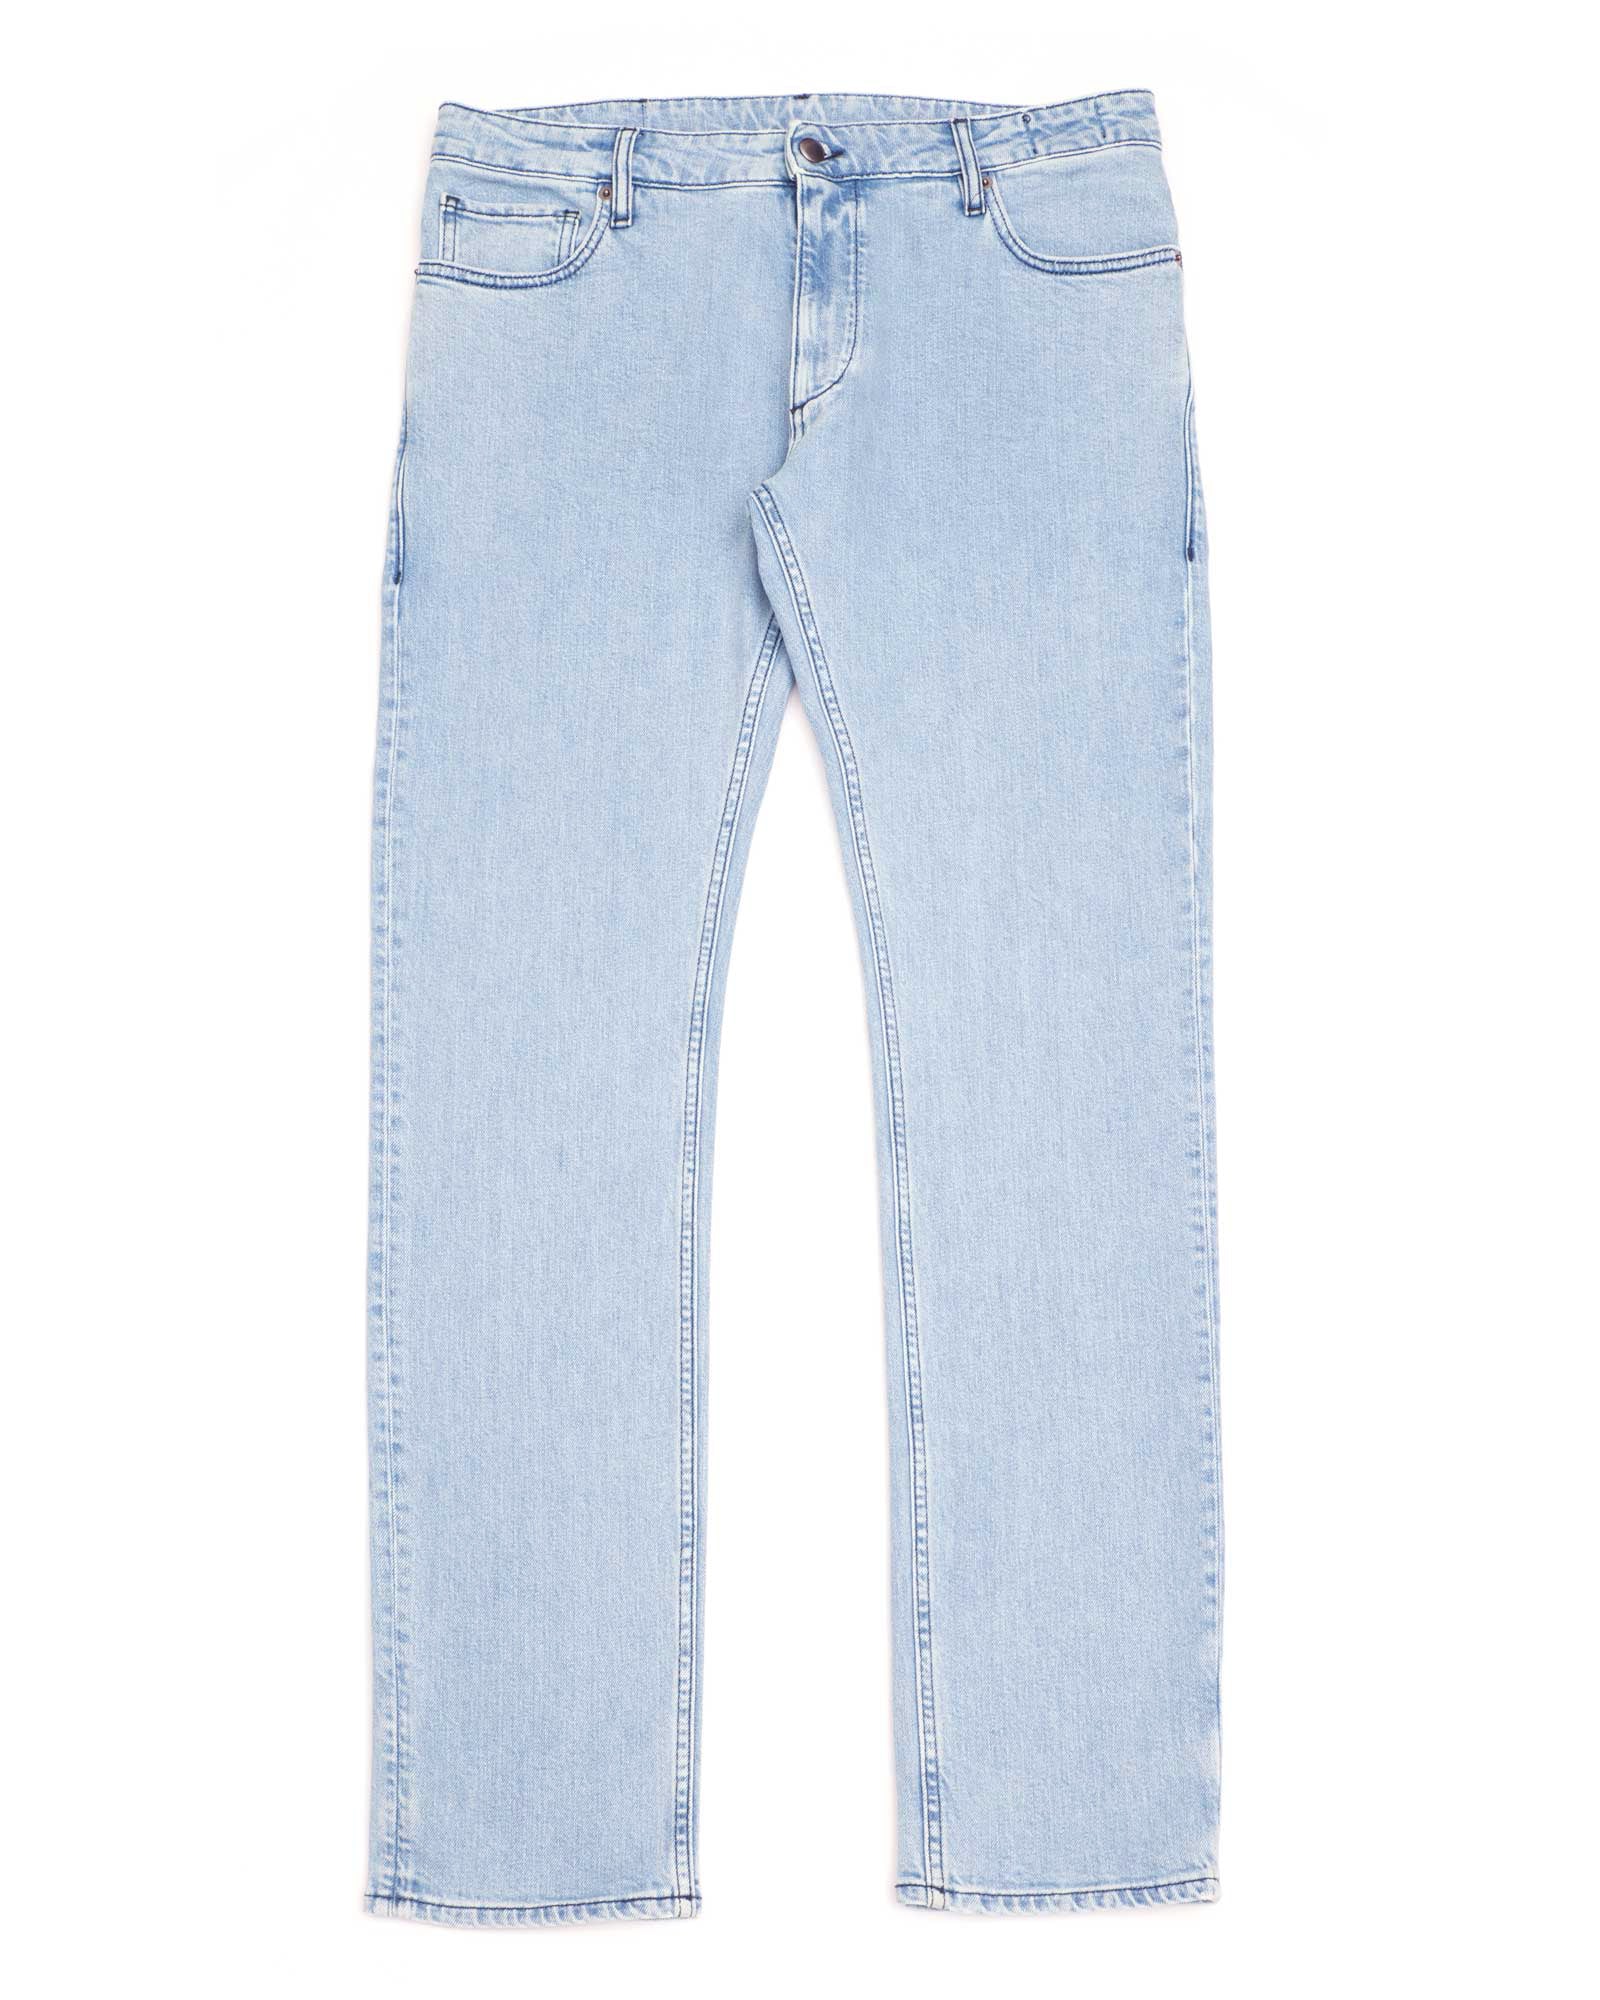 Jeans - Buy online | John Henric